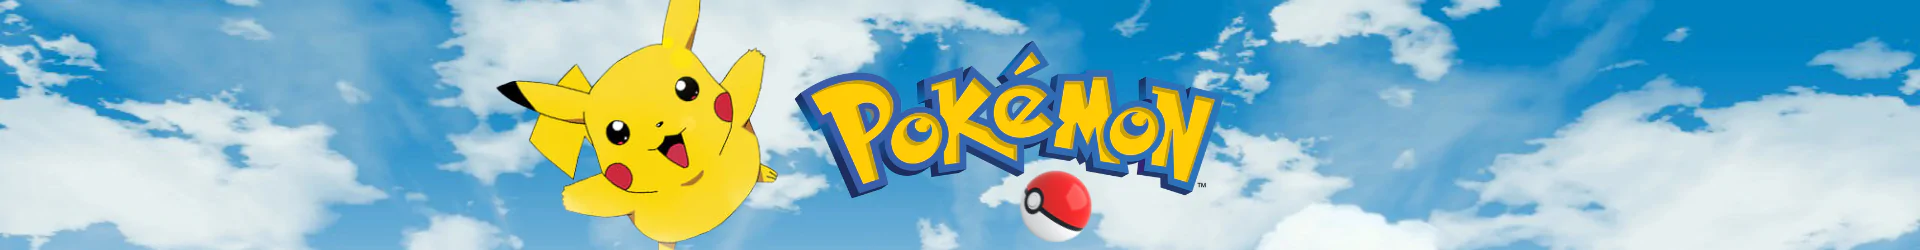 Pokemon repliken banner